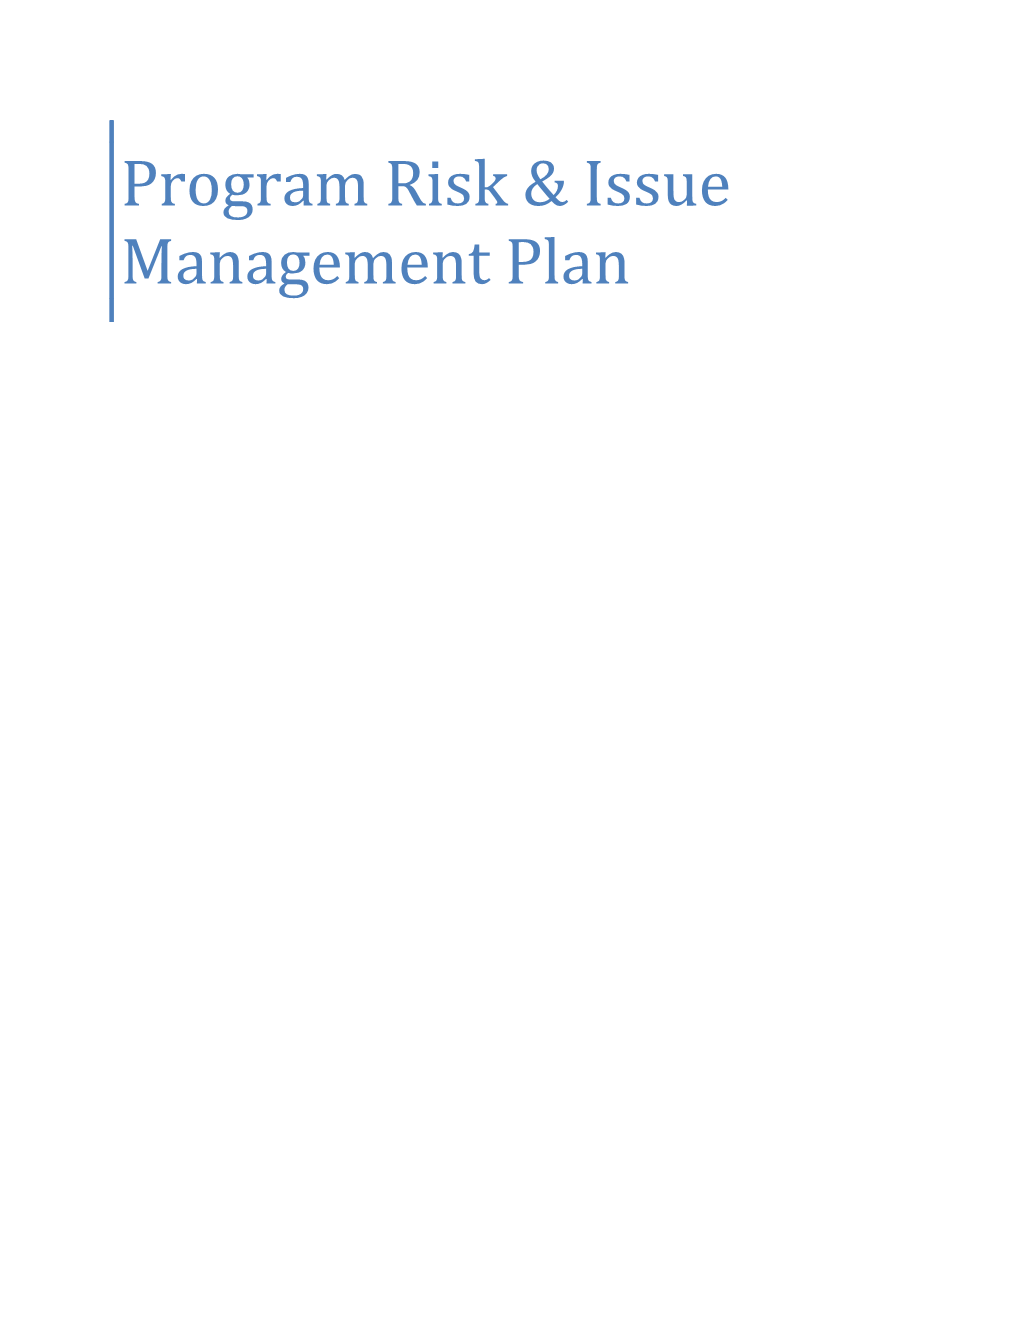 Program Risk & Issue Management Plan s1